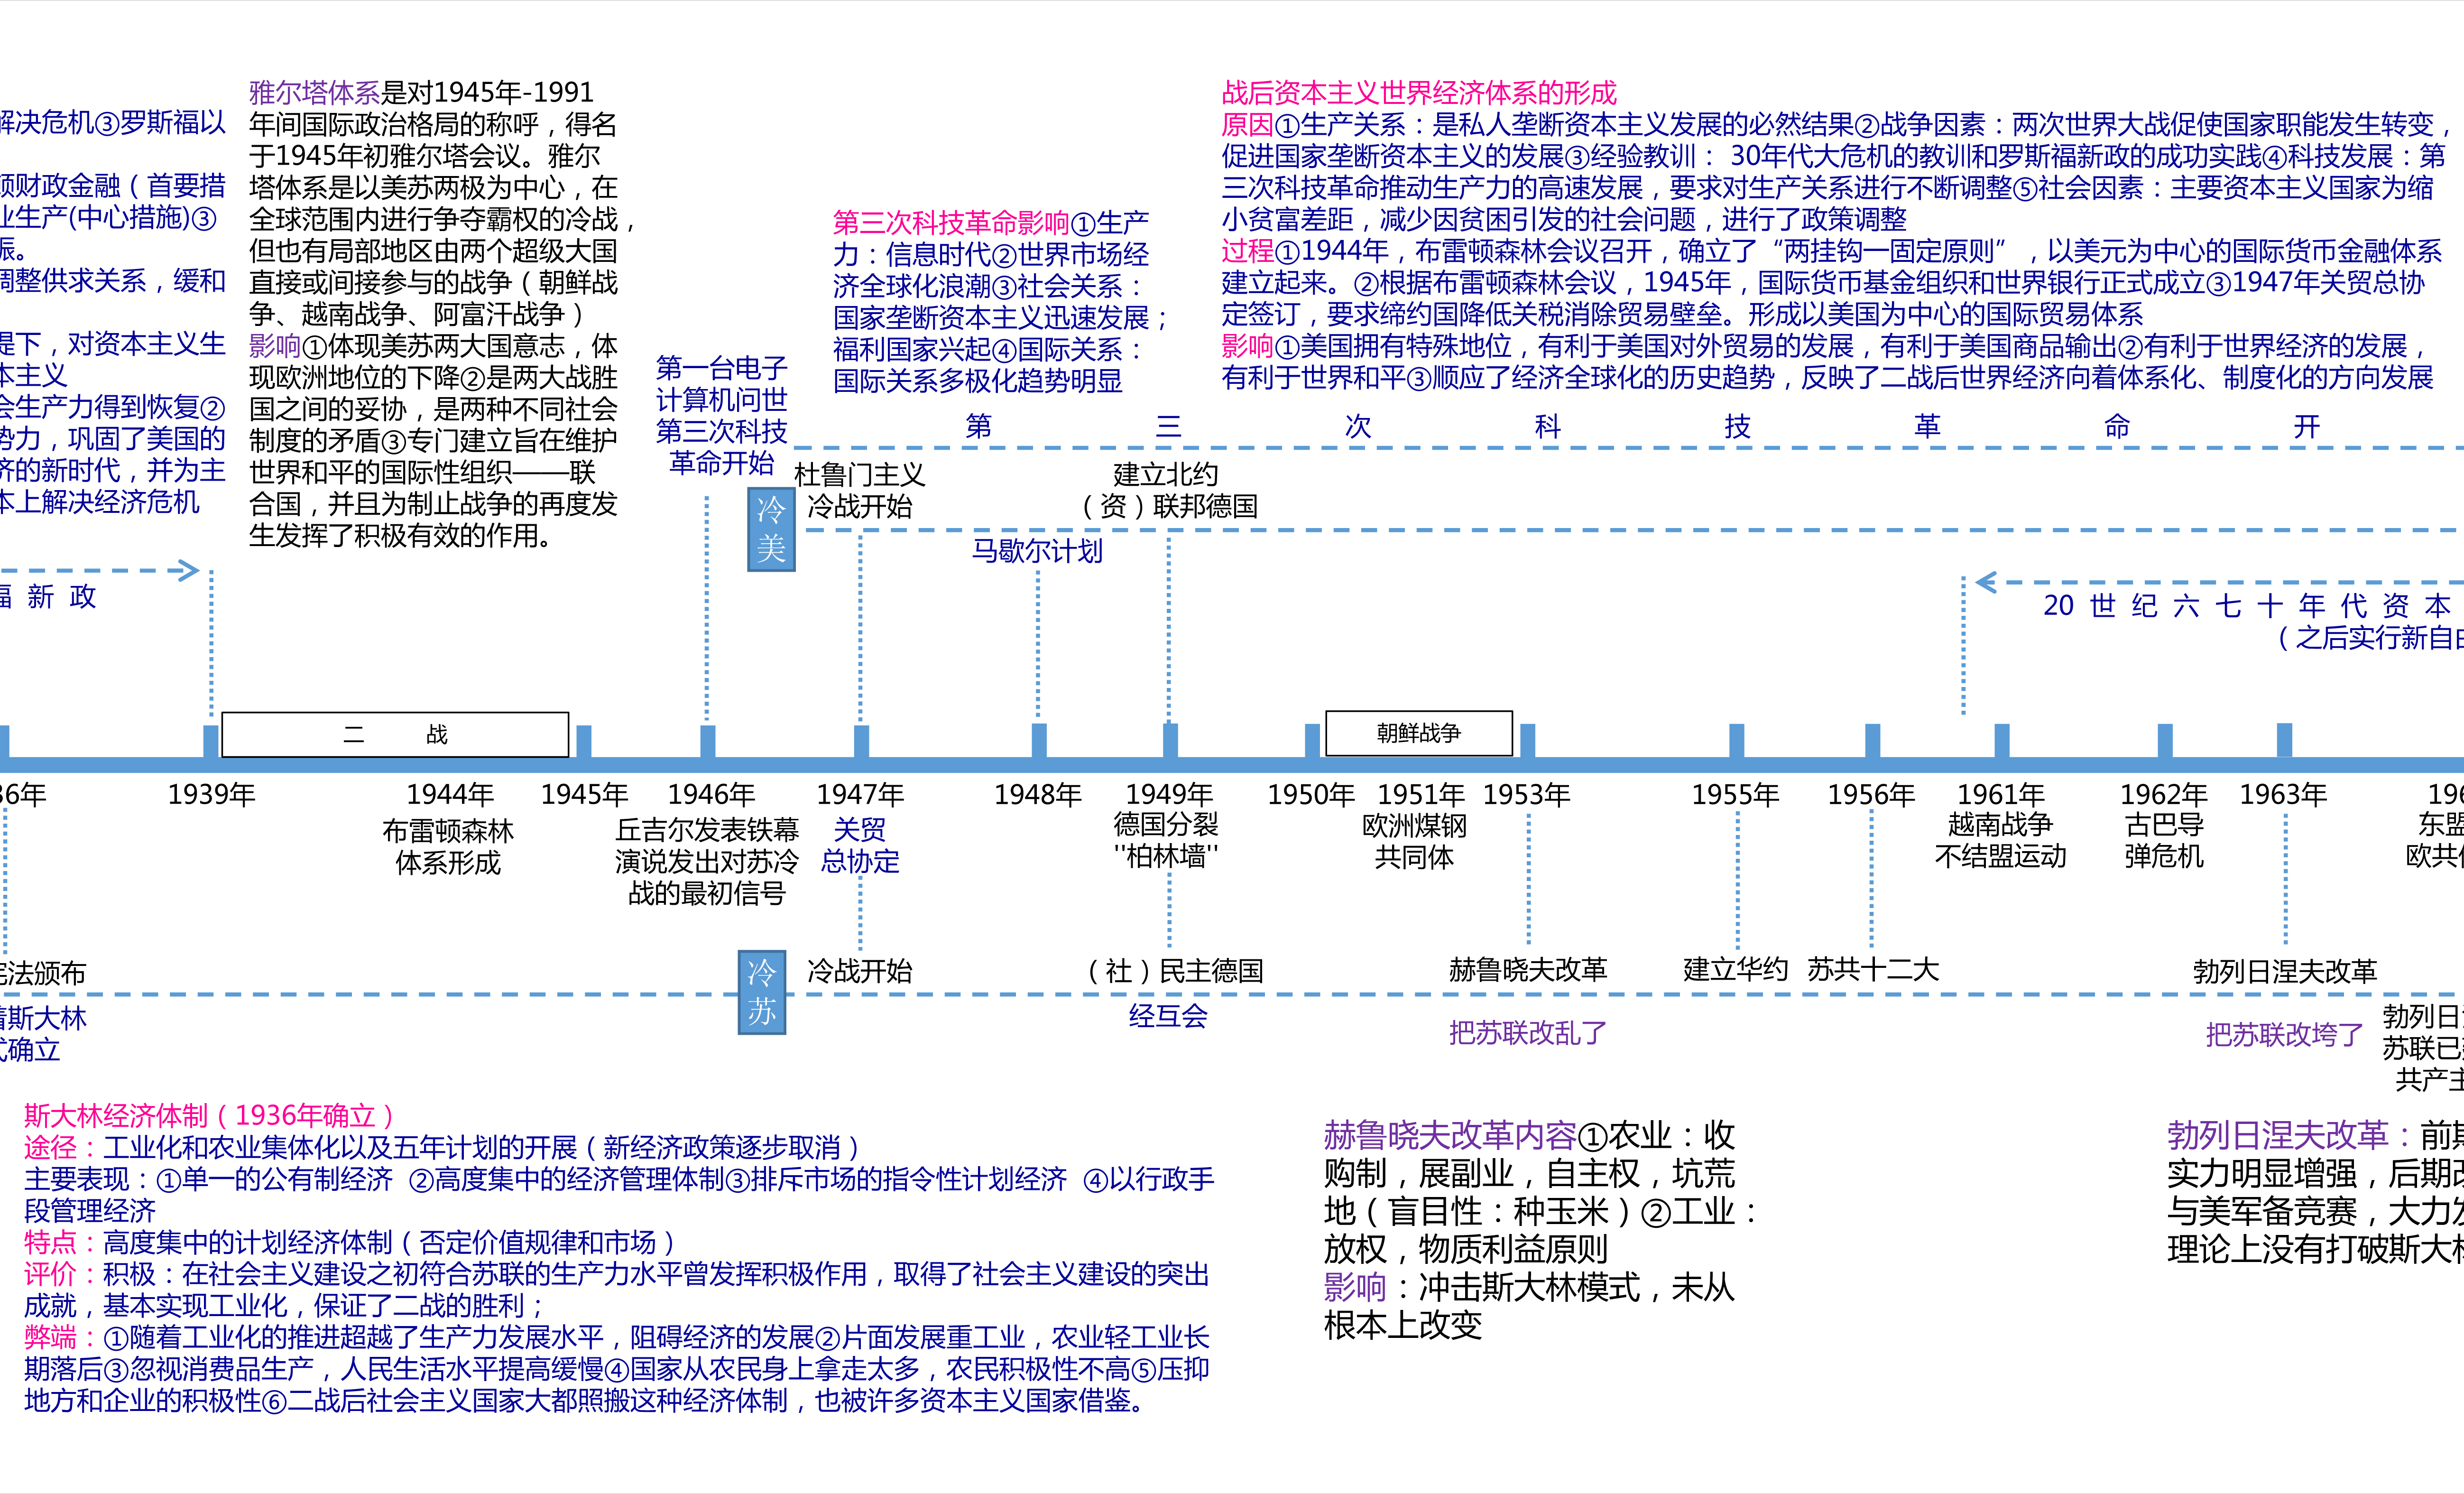 本人是一名历史学霸,选择题几乎不错,我自己制作了中国历史的时间轴